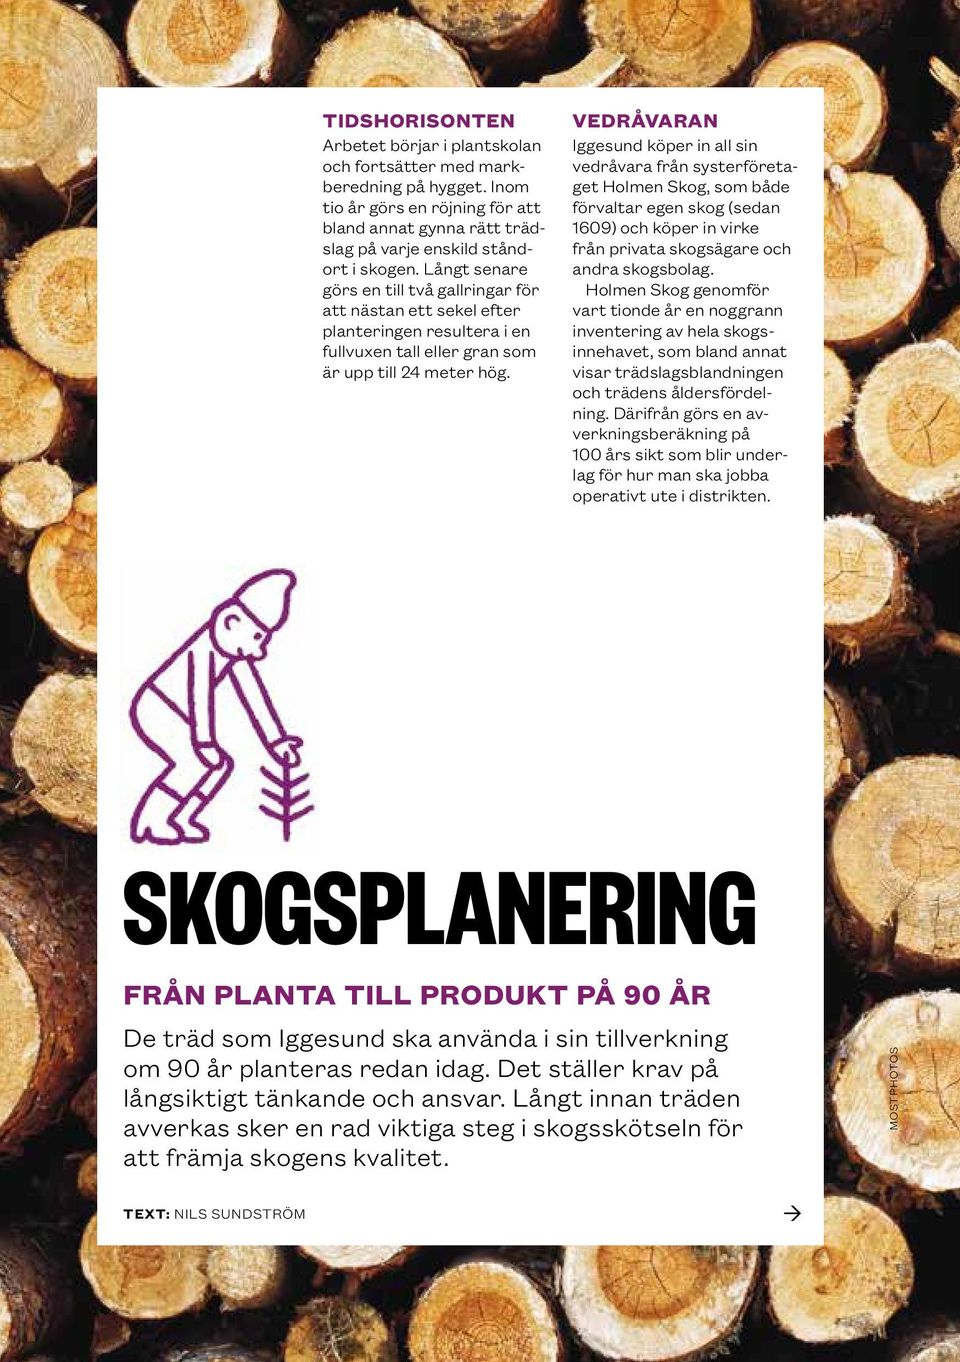 VEDRÅVARAN Iggesund köper in all sin vedråvara från systerföretaget Holmen Skog, som både förvaltar egen skog (sedan 1609) och köper in virke från privata skogsägare och andra skogsbolag.